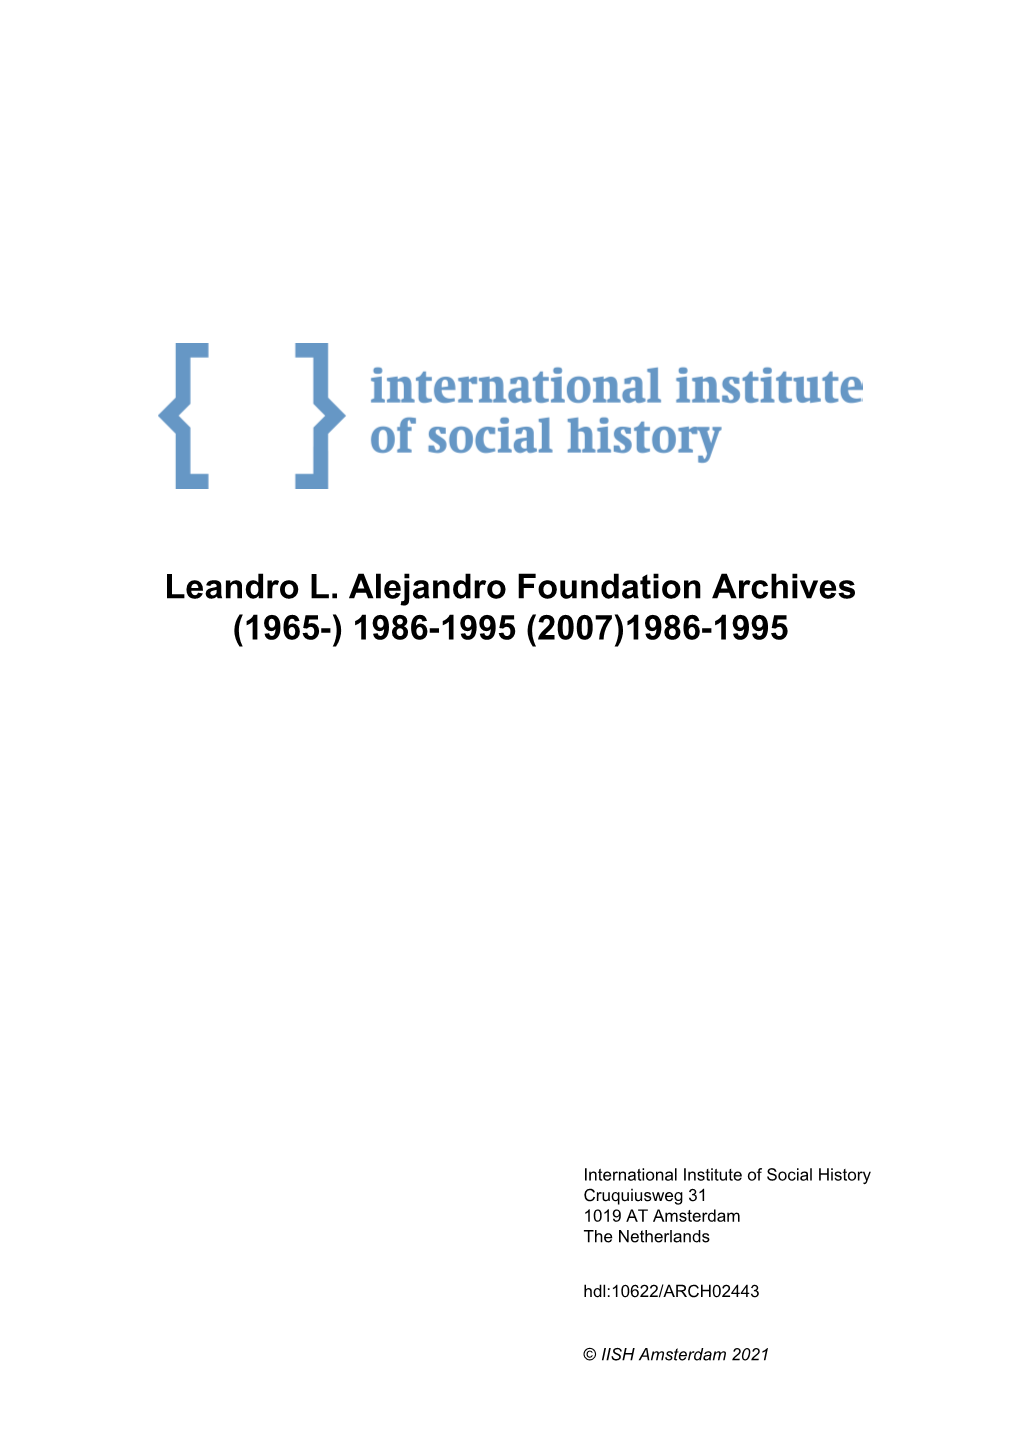 Leandro L. Alejandro Foundation Archives (1965-) 1986-1995 (2007)1986-1995